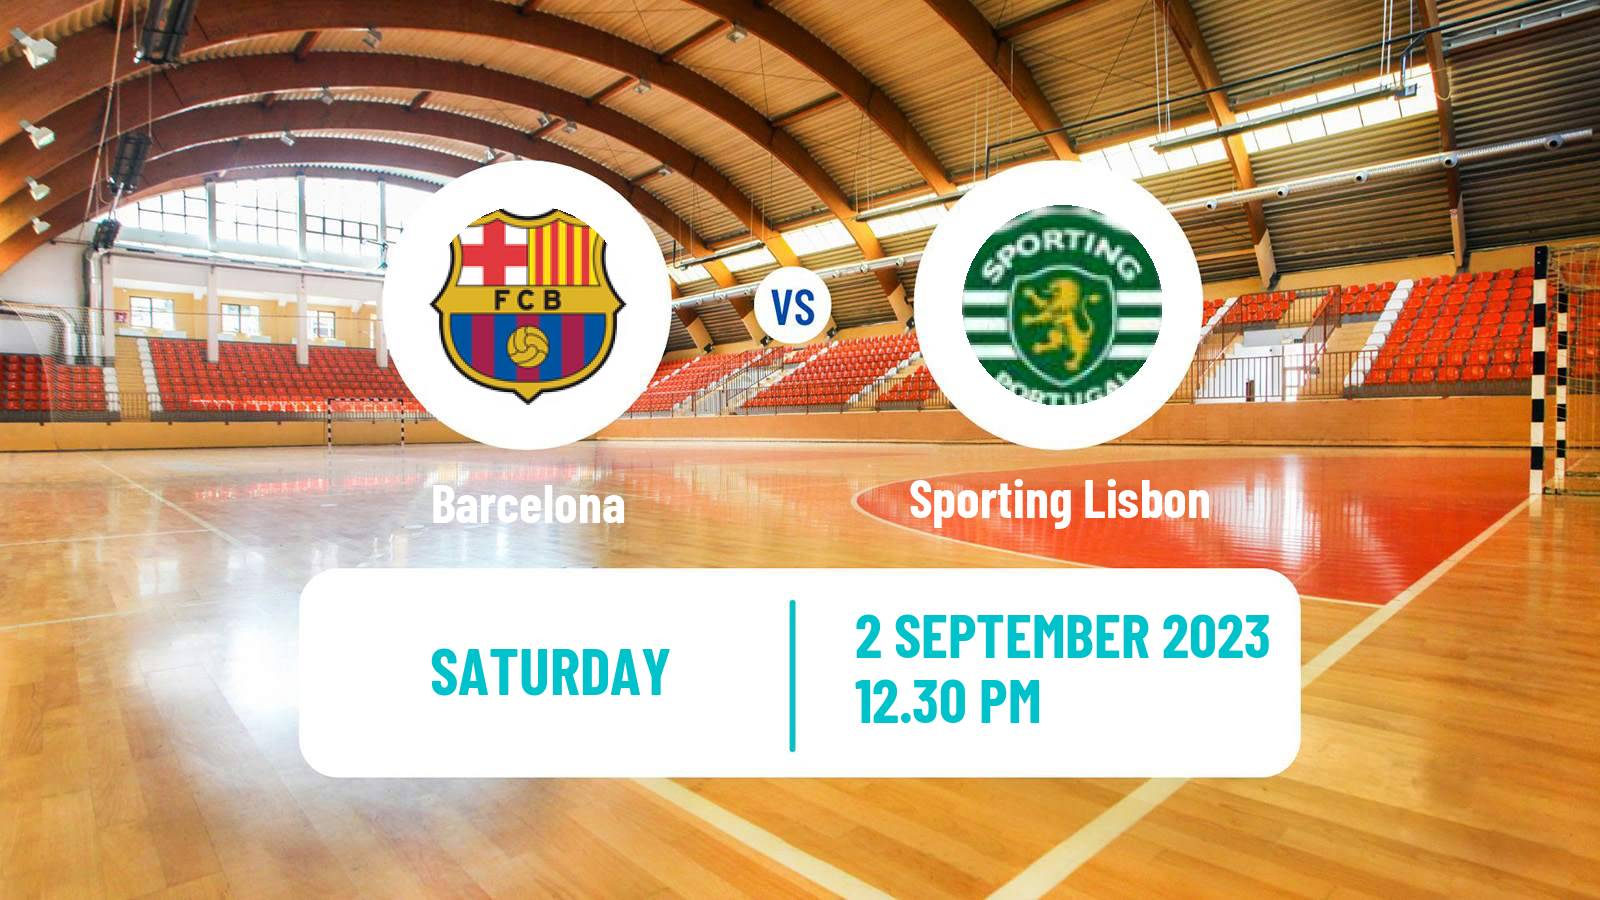 Handball Supercopa Iberica Handball Barcelona - Sporting Lisbon